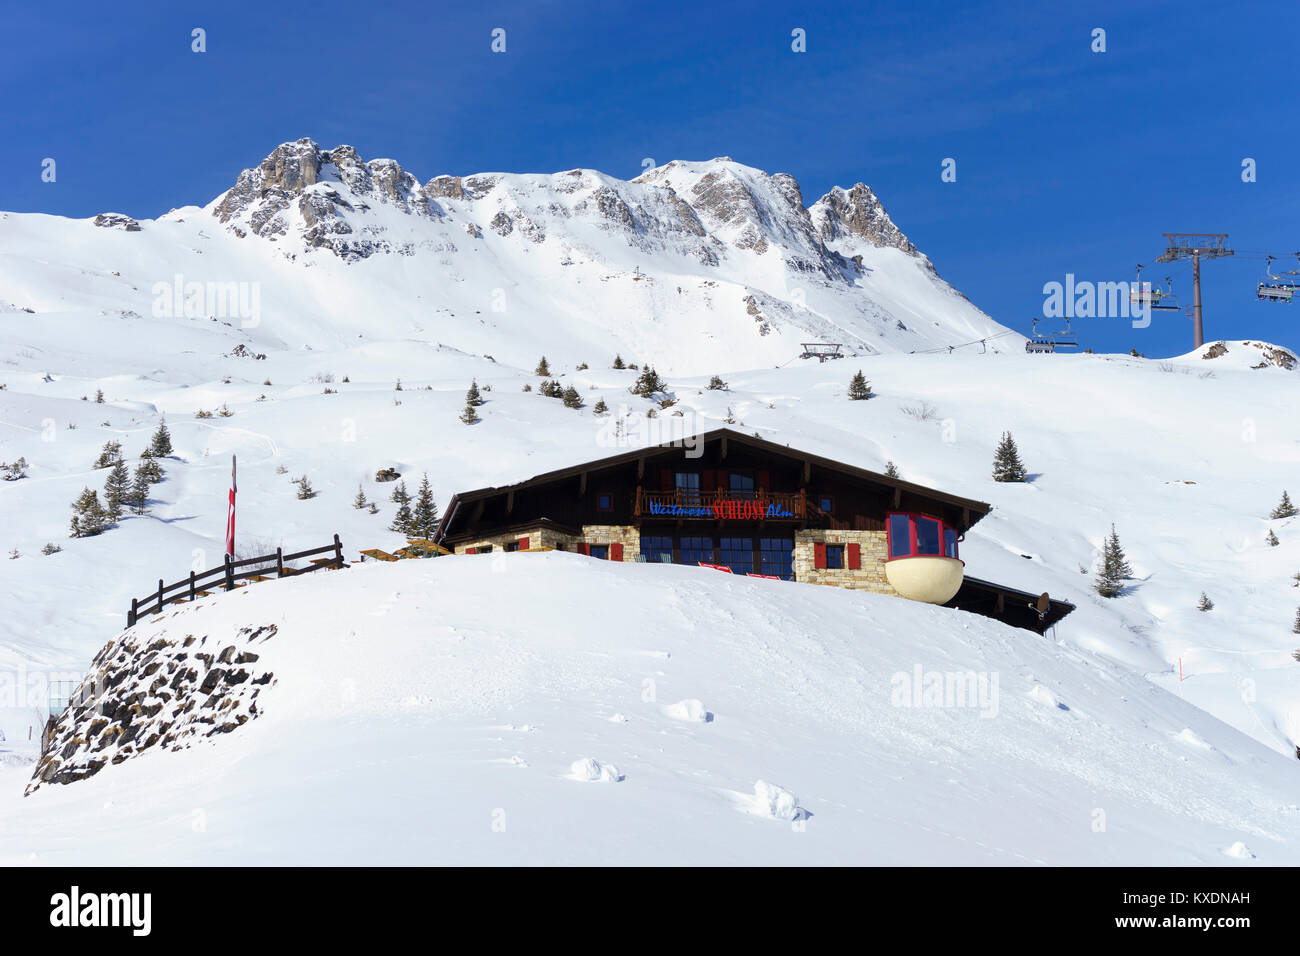 Ski hut Weitmoser Schloßalm, Ski area Schloßalm, Bad Hofgastein, Salzburger Land, Austria Stock Photo